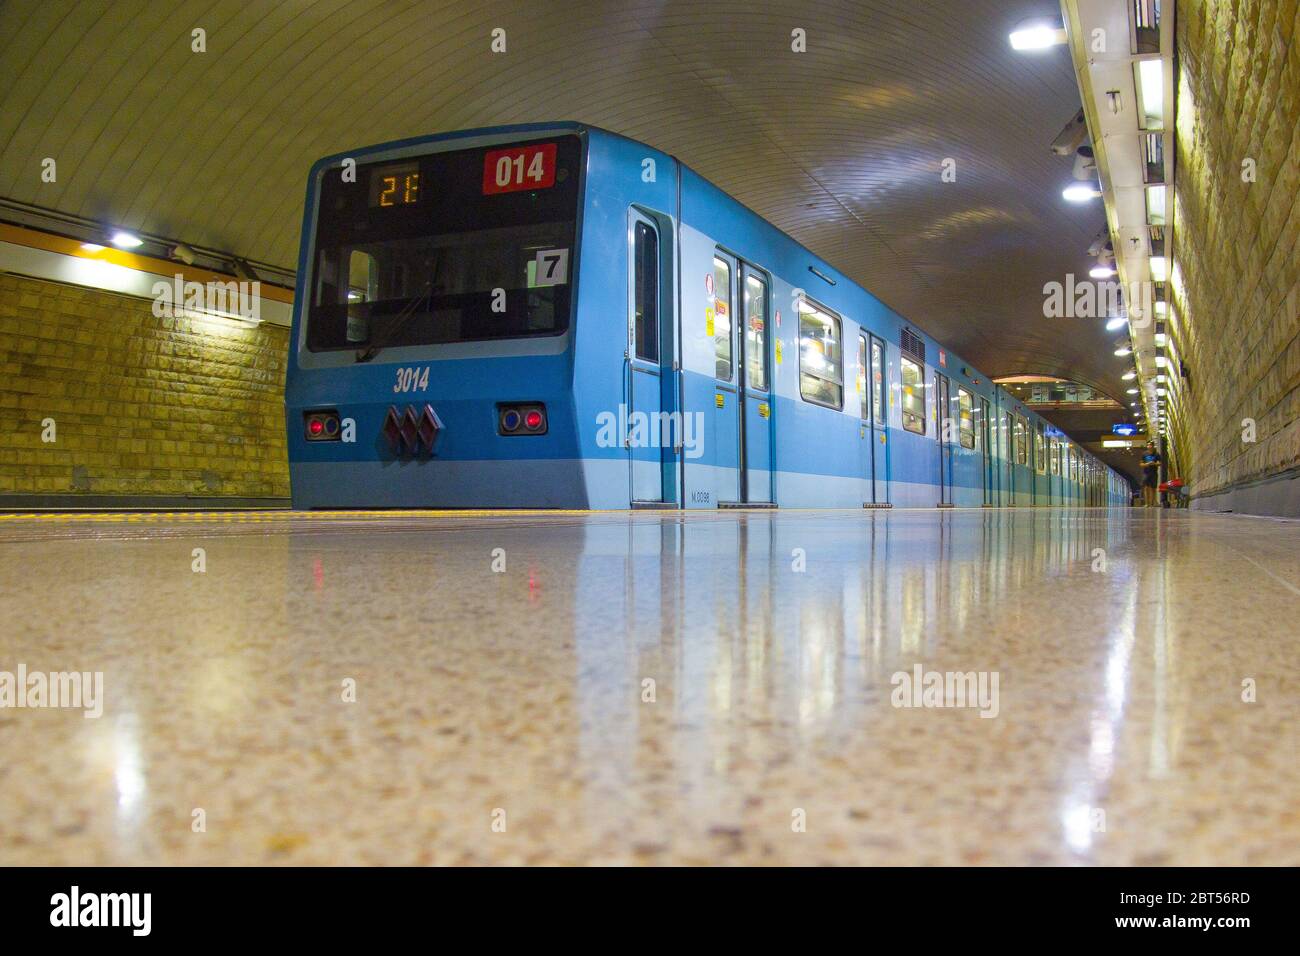 SANTIAGO, CILE - GENNAIO 2014: Un treno della metropolitana Santiago alla stazione El Parrón della linea 2 Foto Stock